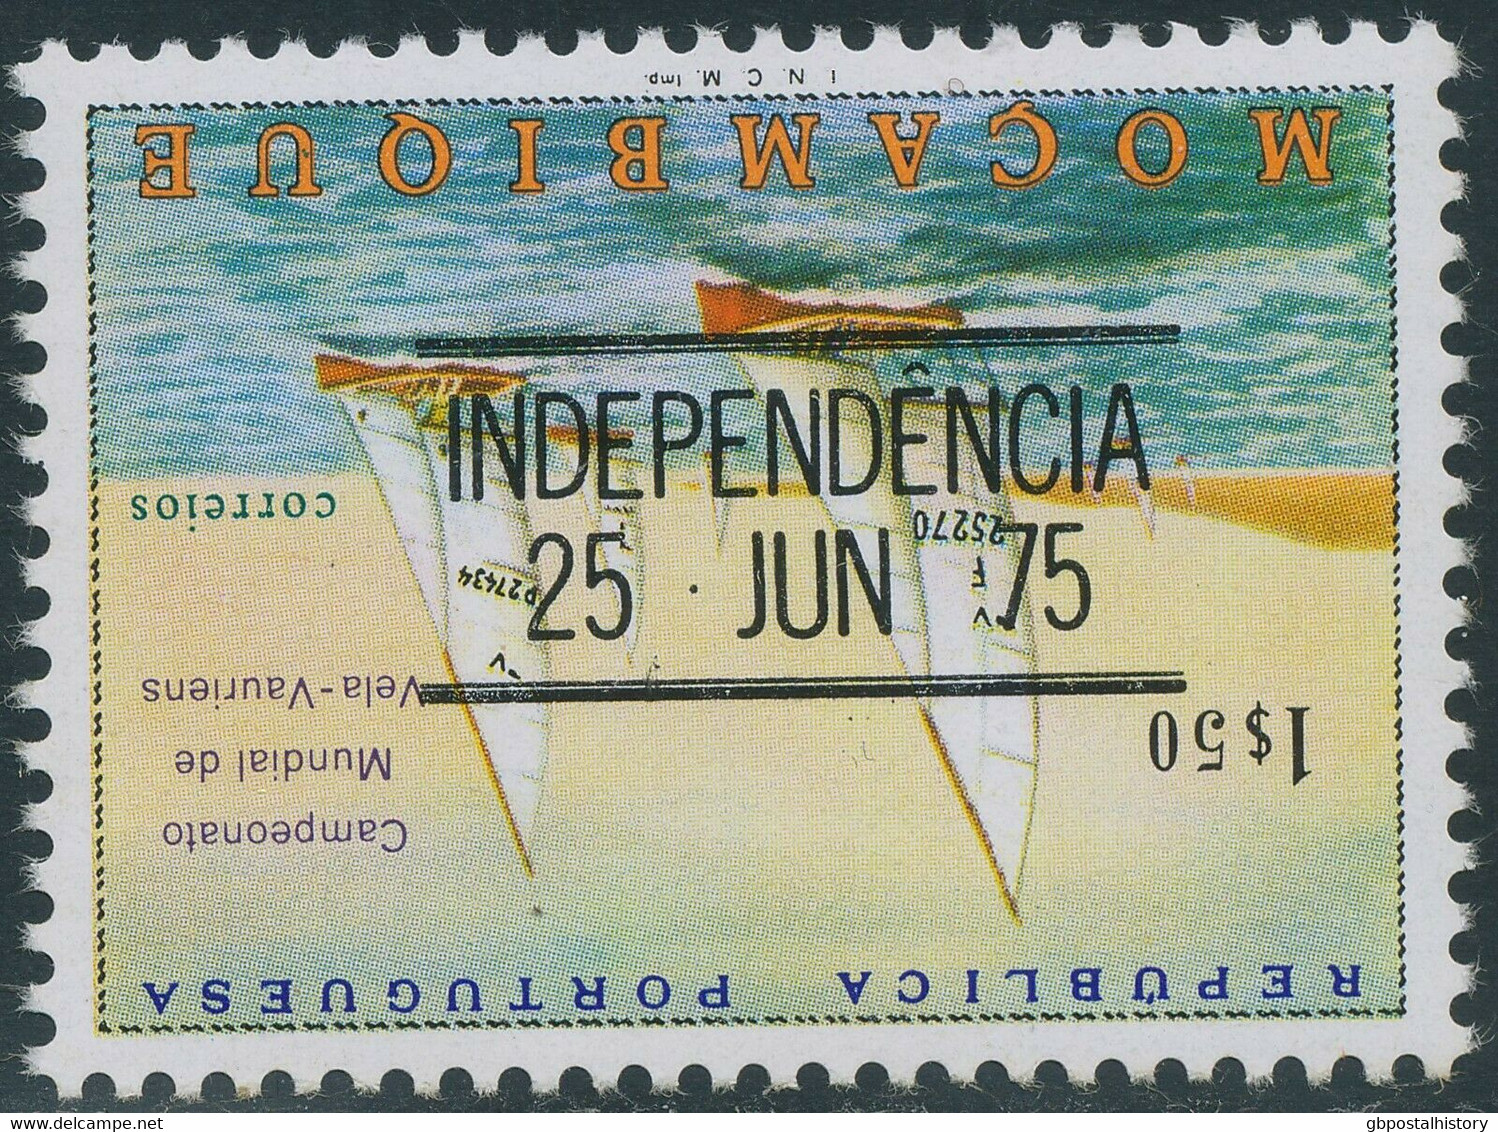 MOSAMBIK 1975 Unabhängigkeit 0.10 E. (2x), 1.50 E. U. 4.50 E. INVERTED OVERPRINT - Mozambique